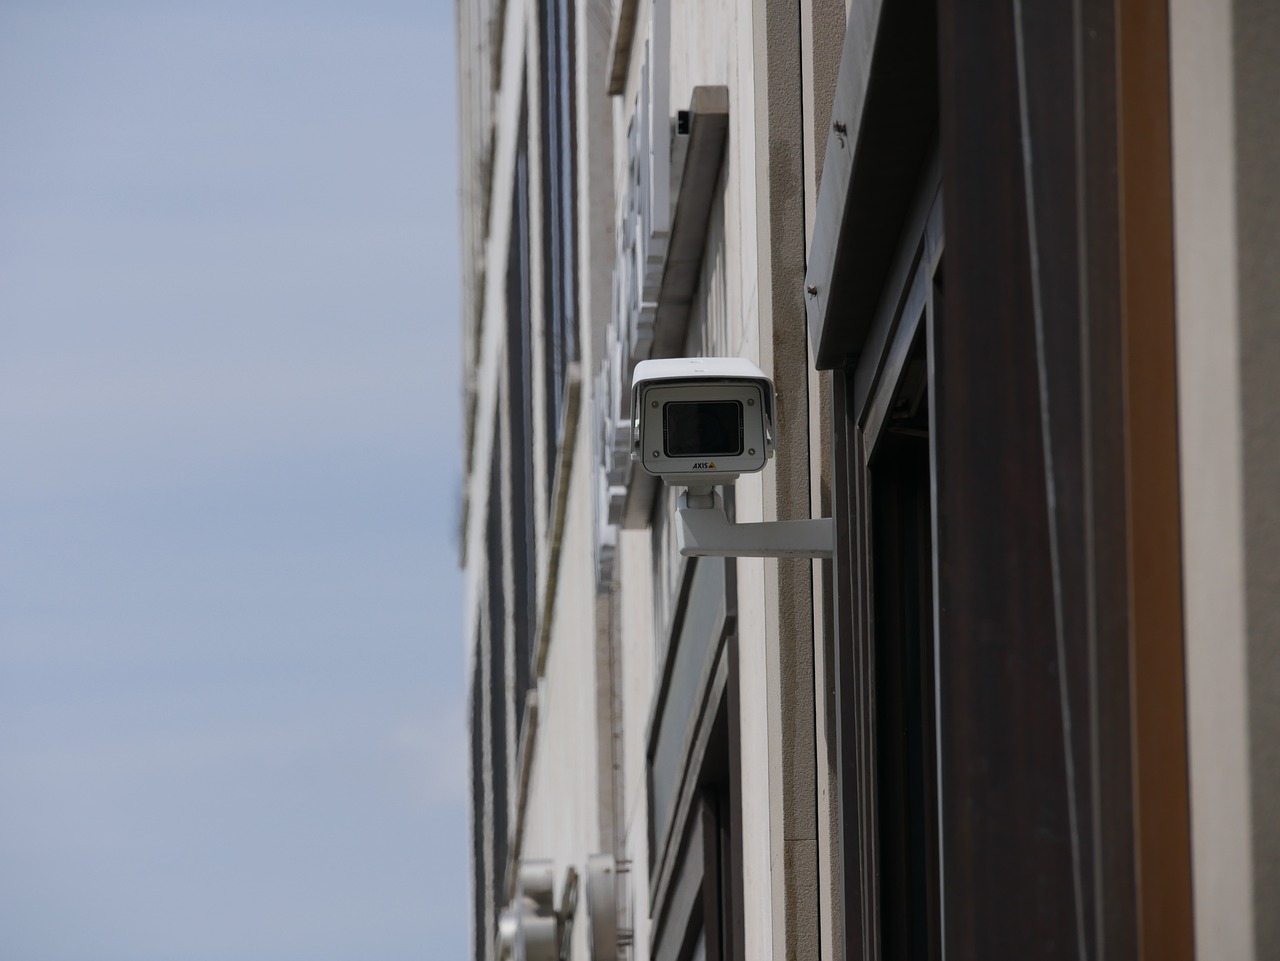 Fotoaparatas, Stebėjimas, Nsa, Vaizdo Kamera, Saugumas, Video, Vaizdo Stebėjimas, Valstybės Saugumas, Įrašymas, Stebėjimo Kamera